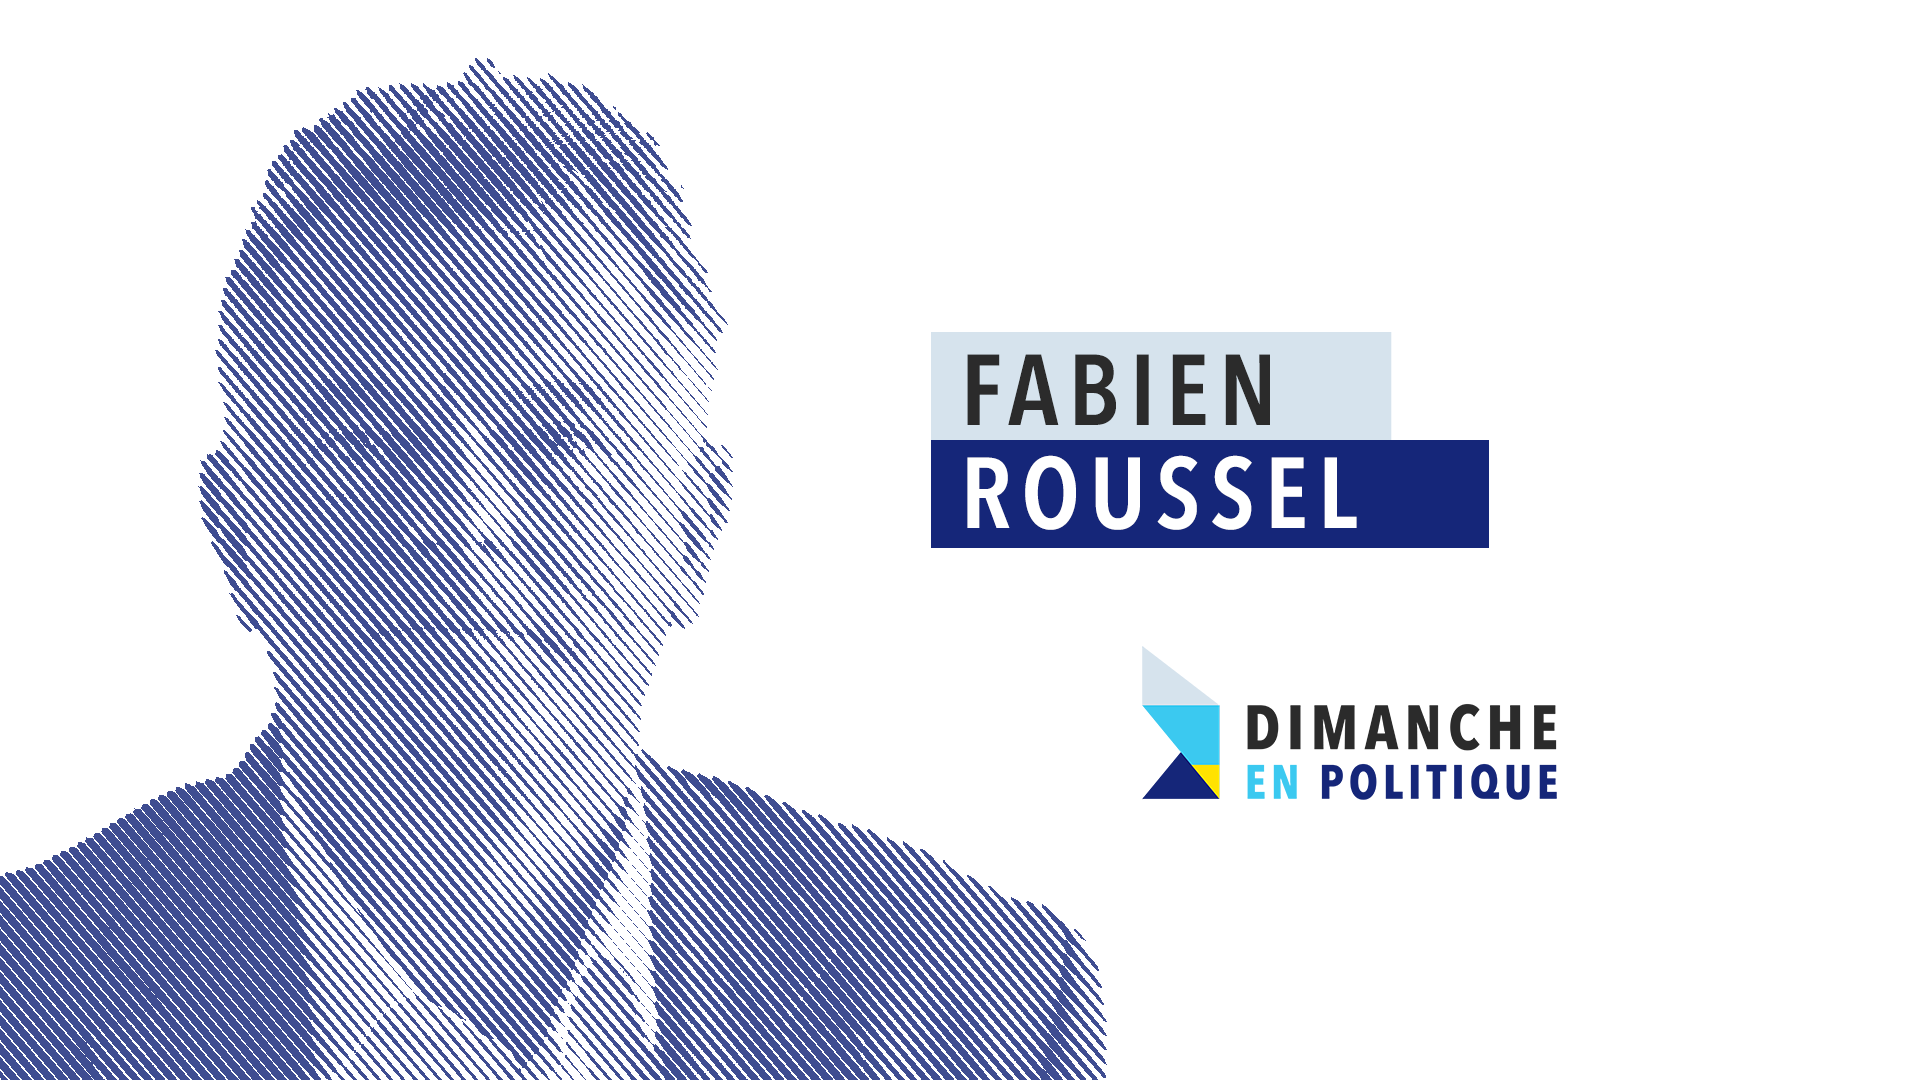 Fabien Roussel